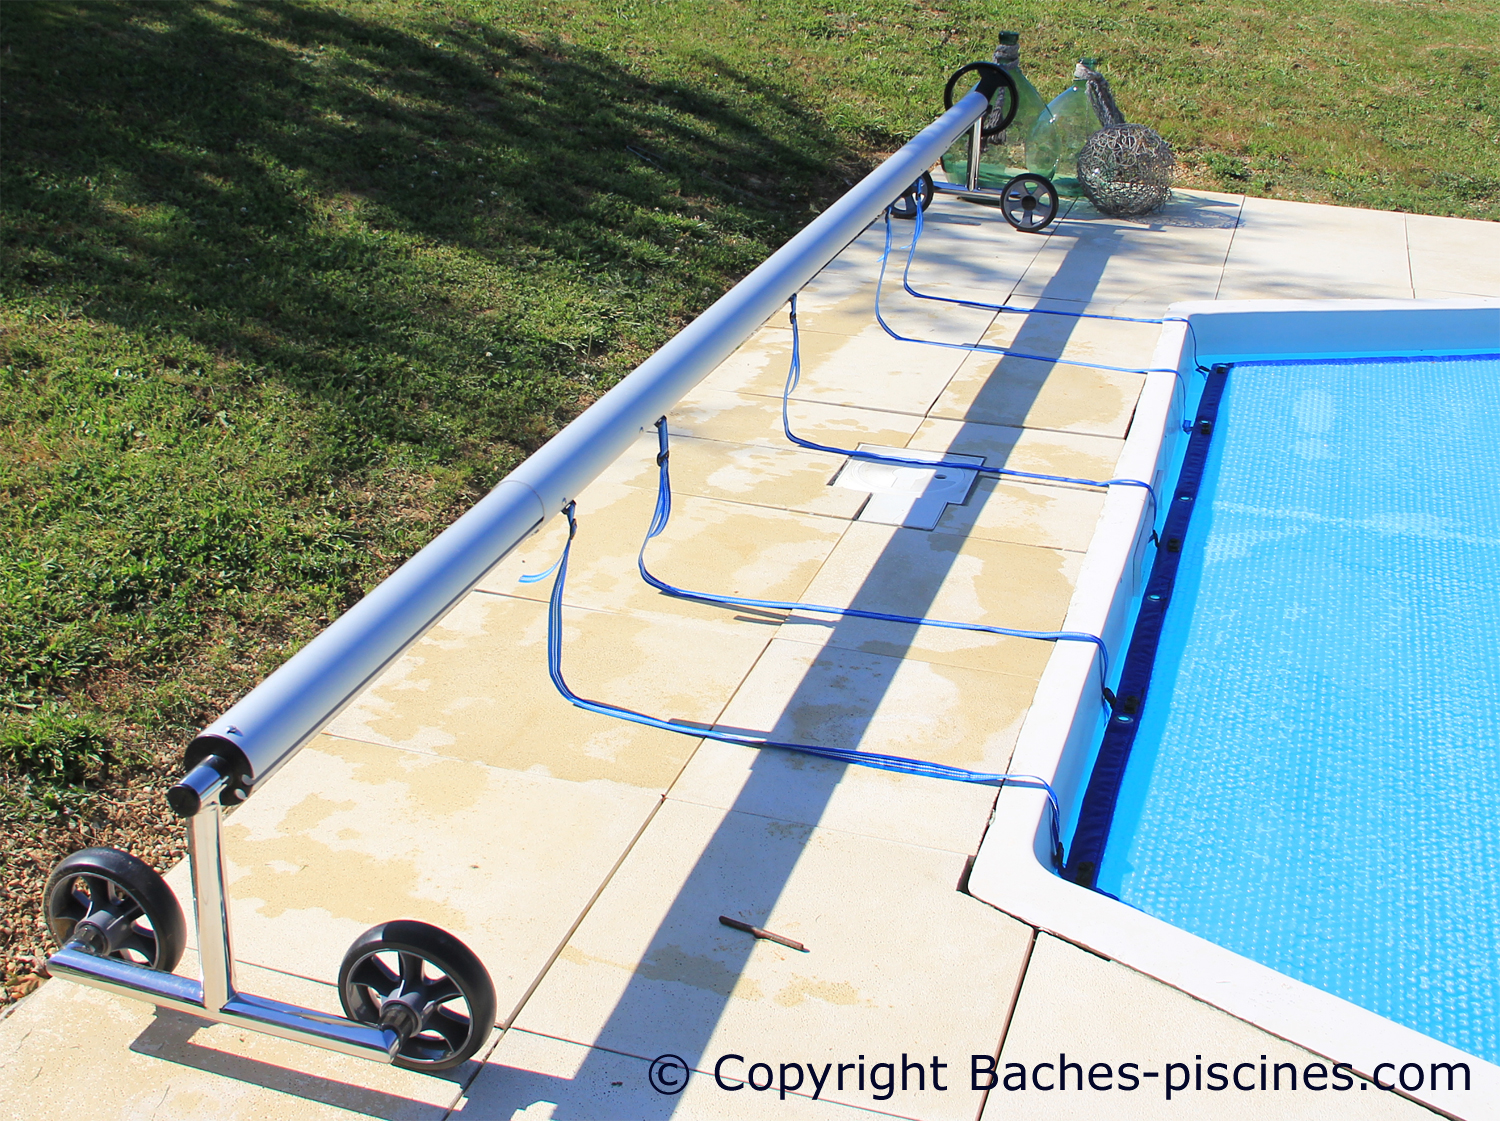 Enrouleur bâche piscine téléscopique Pro - Outlet Piscines